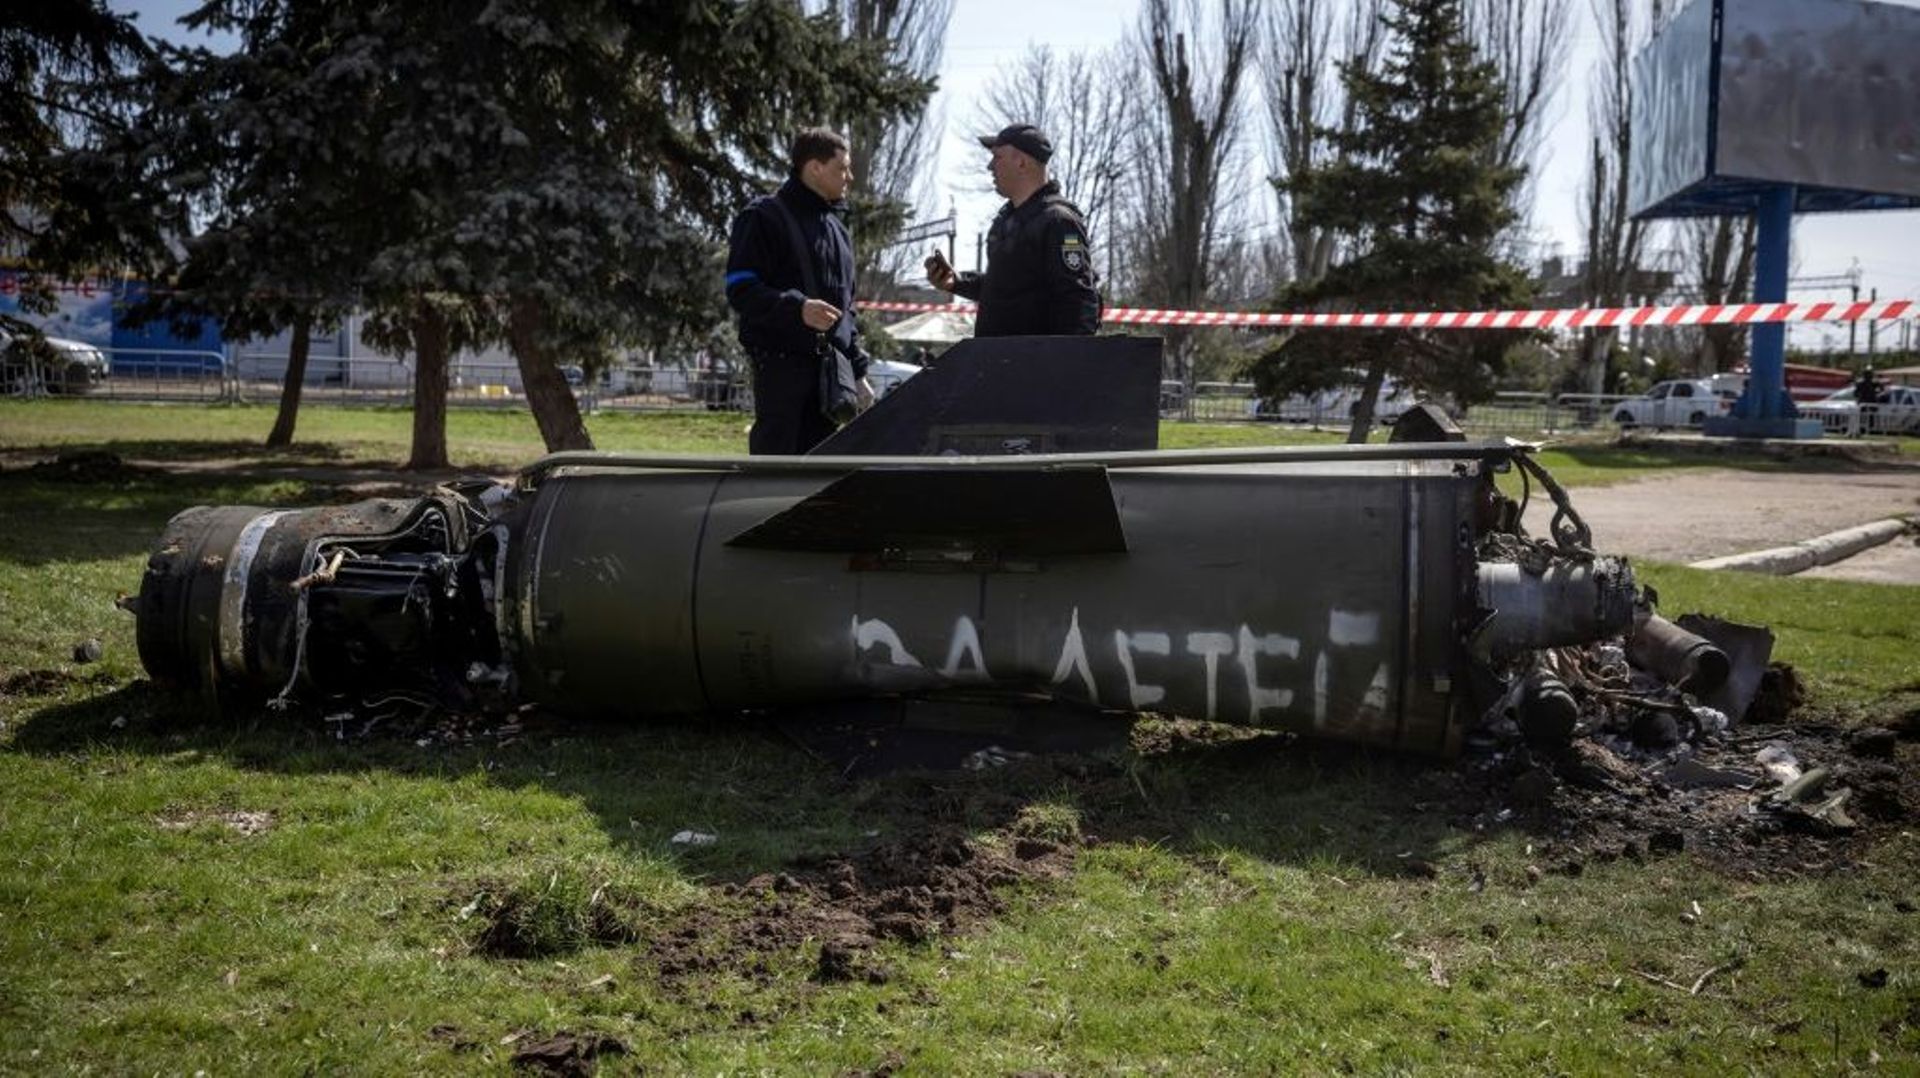 Des policiers ukrainiens devant les débris d’un missile sur lequel est écrit en russe "pour nos enfants" près de la gare de Kramatorsk, cible d’une attaque qui a fait 35 morts, le 8 avril 2022 dans la région du Donbass, dans l’est de l’Ukraine